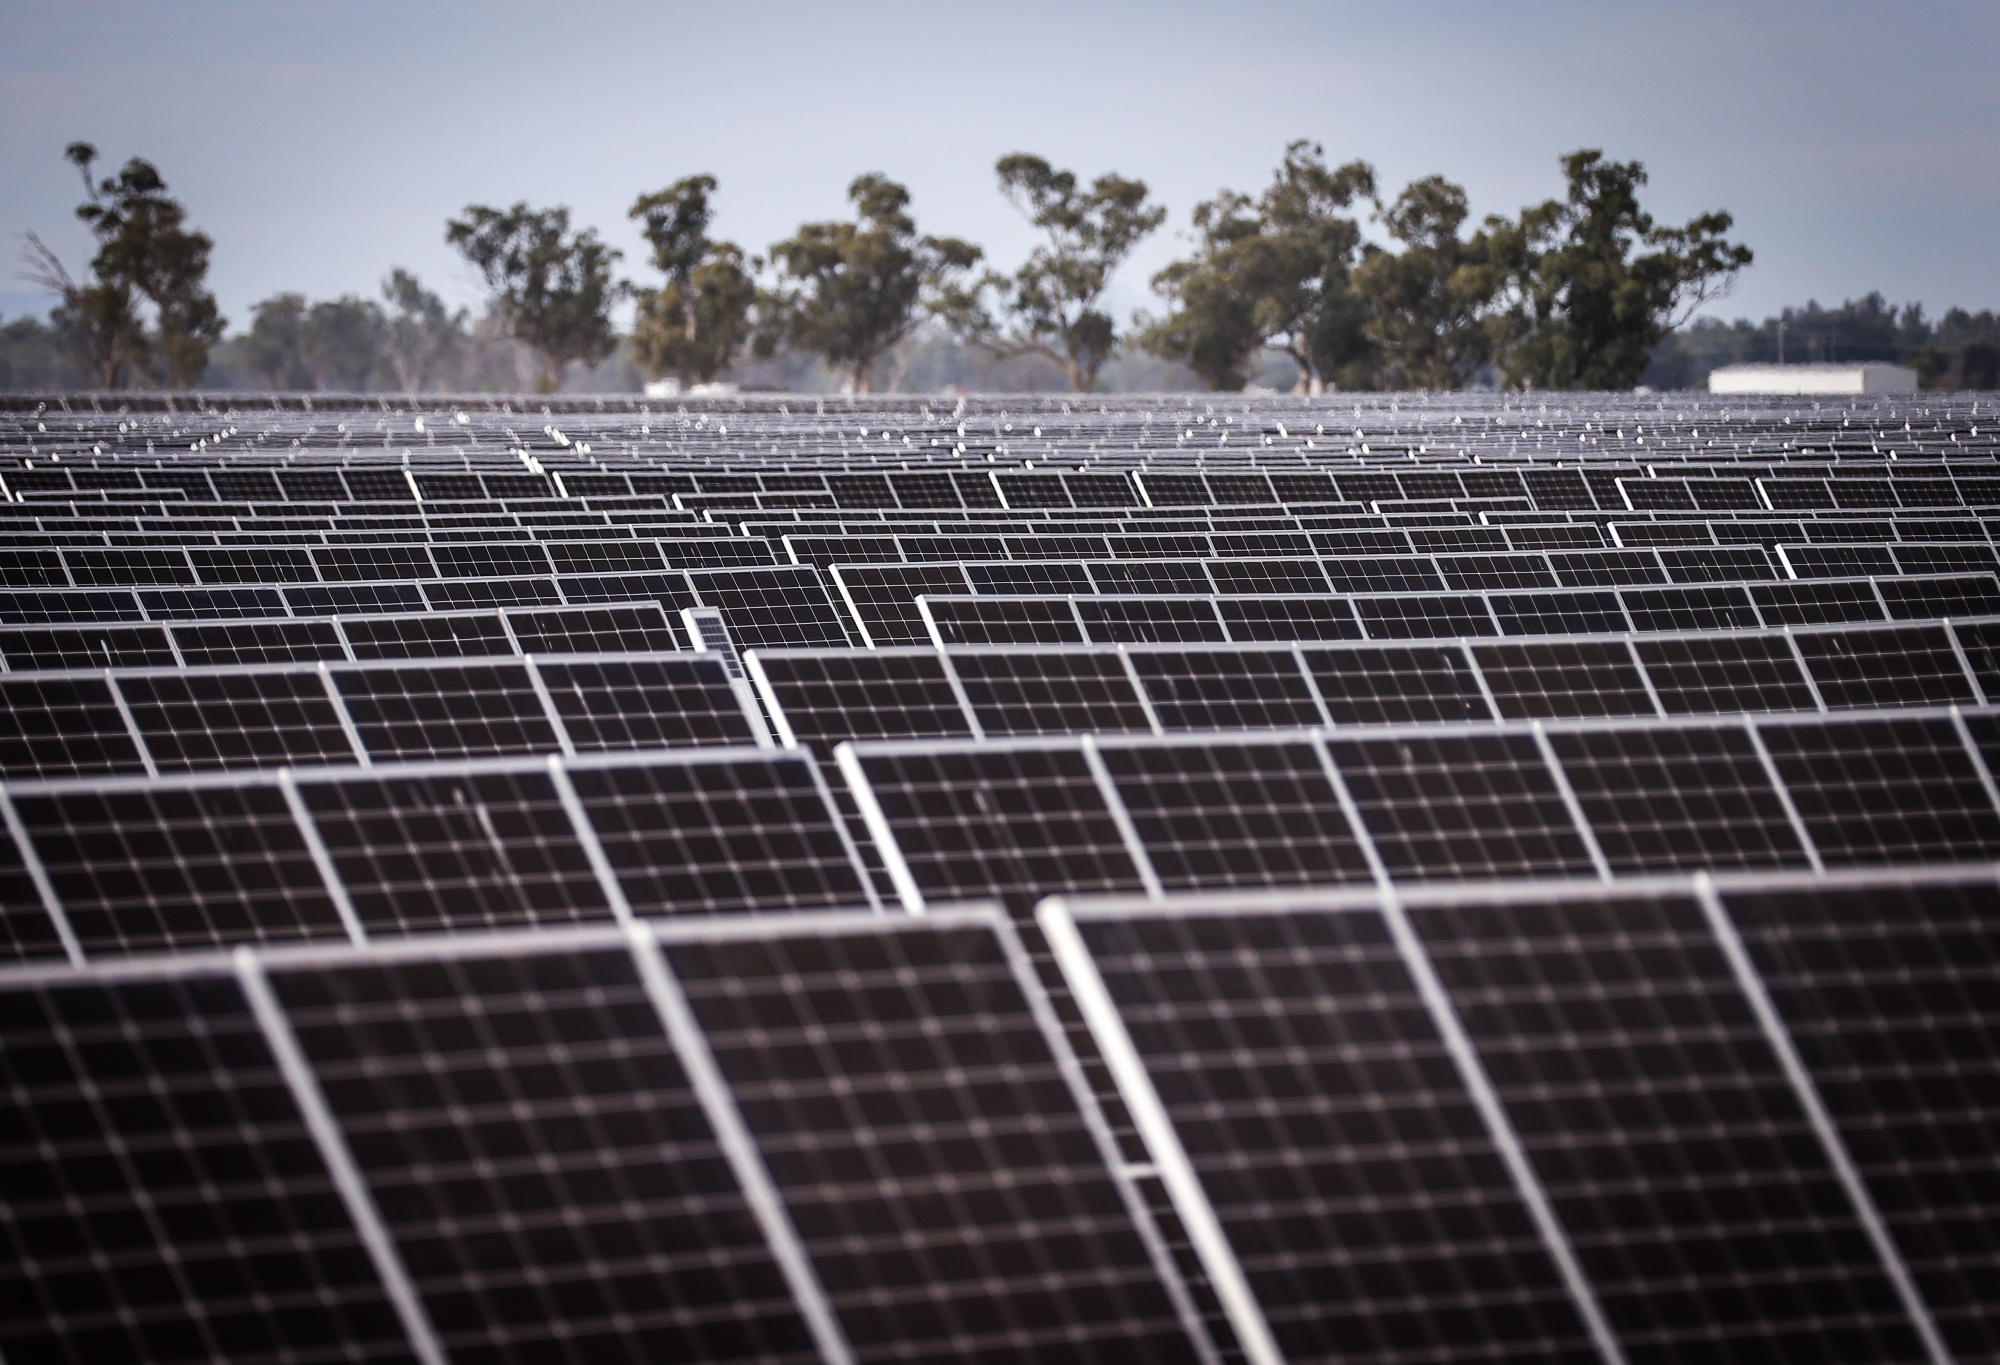 Solar Farm As Australians Favor Clean Energy Over Gas for Economic Revival